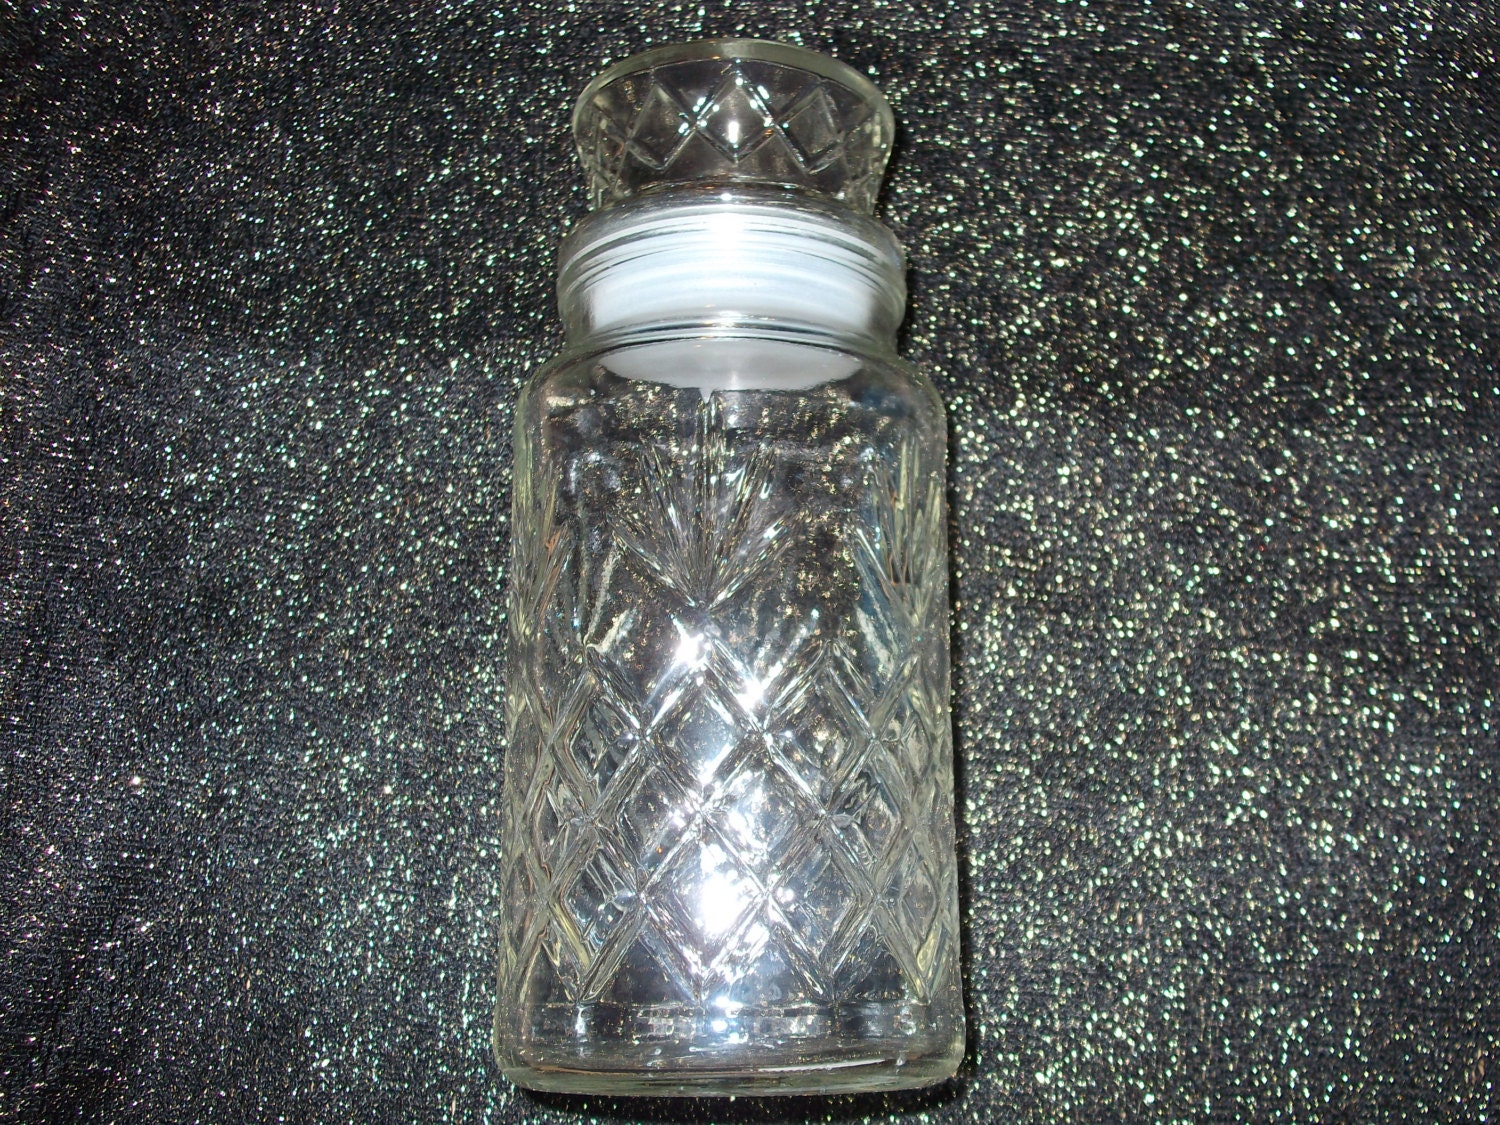 1983 Planters Peanut Glass Jar glass jar large glass jar | Etsy1500 x 1125